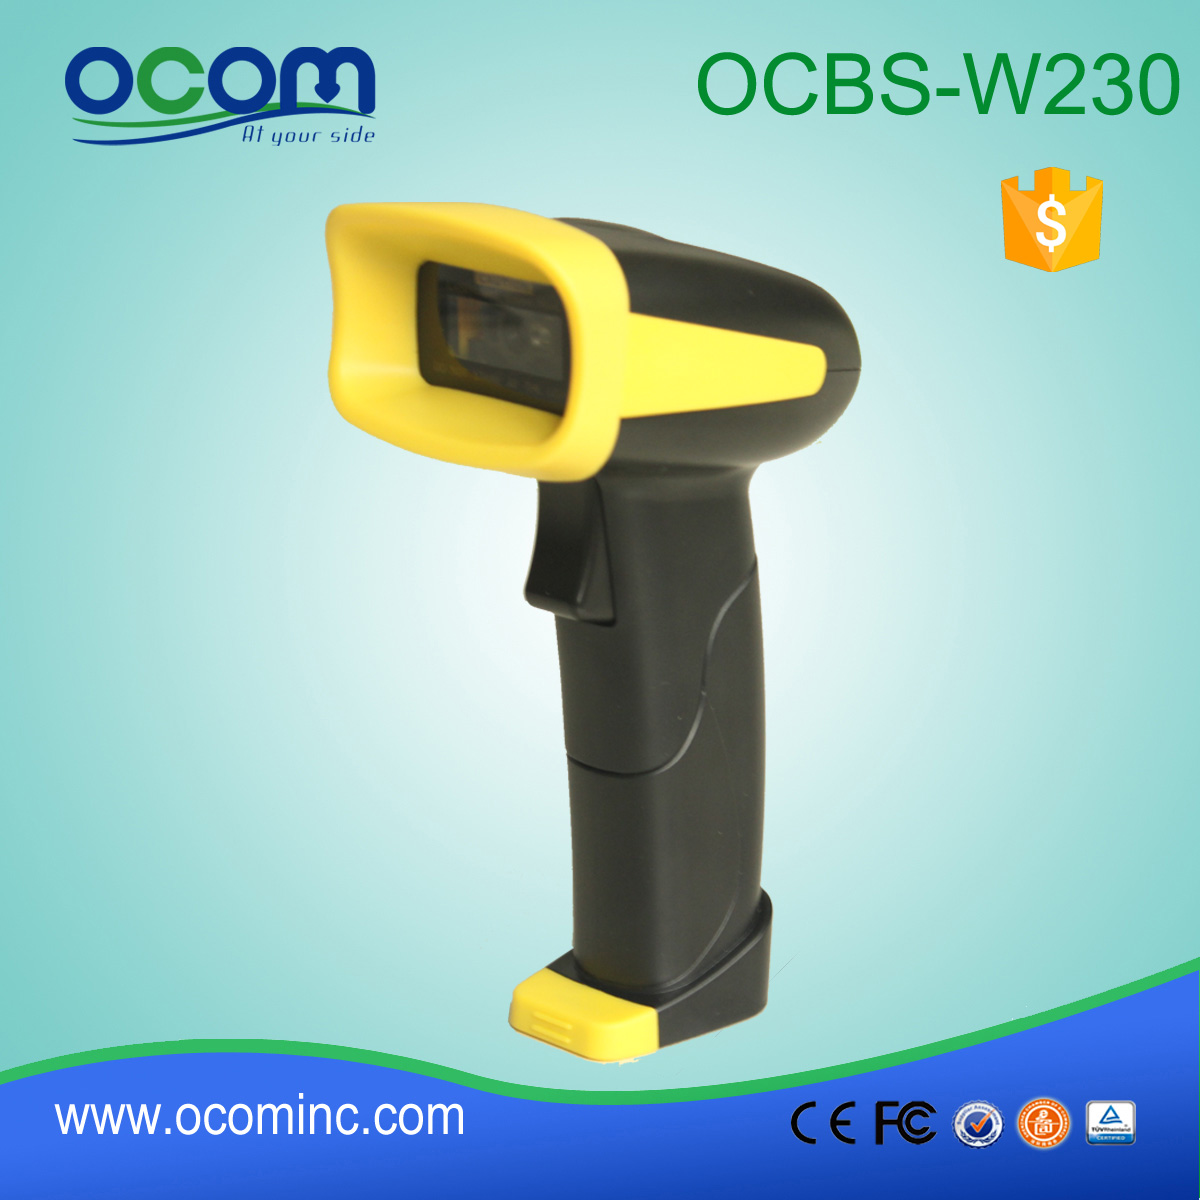 OCBs-W230: scanner de código de barras de alta velocidade sem fio Bluetooth 2D portátil